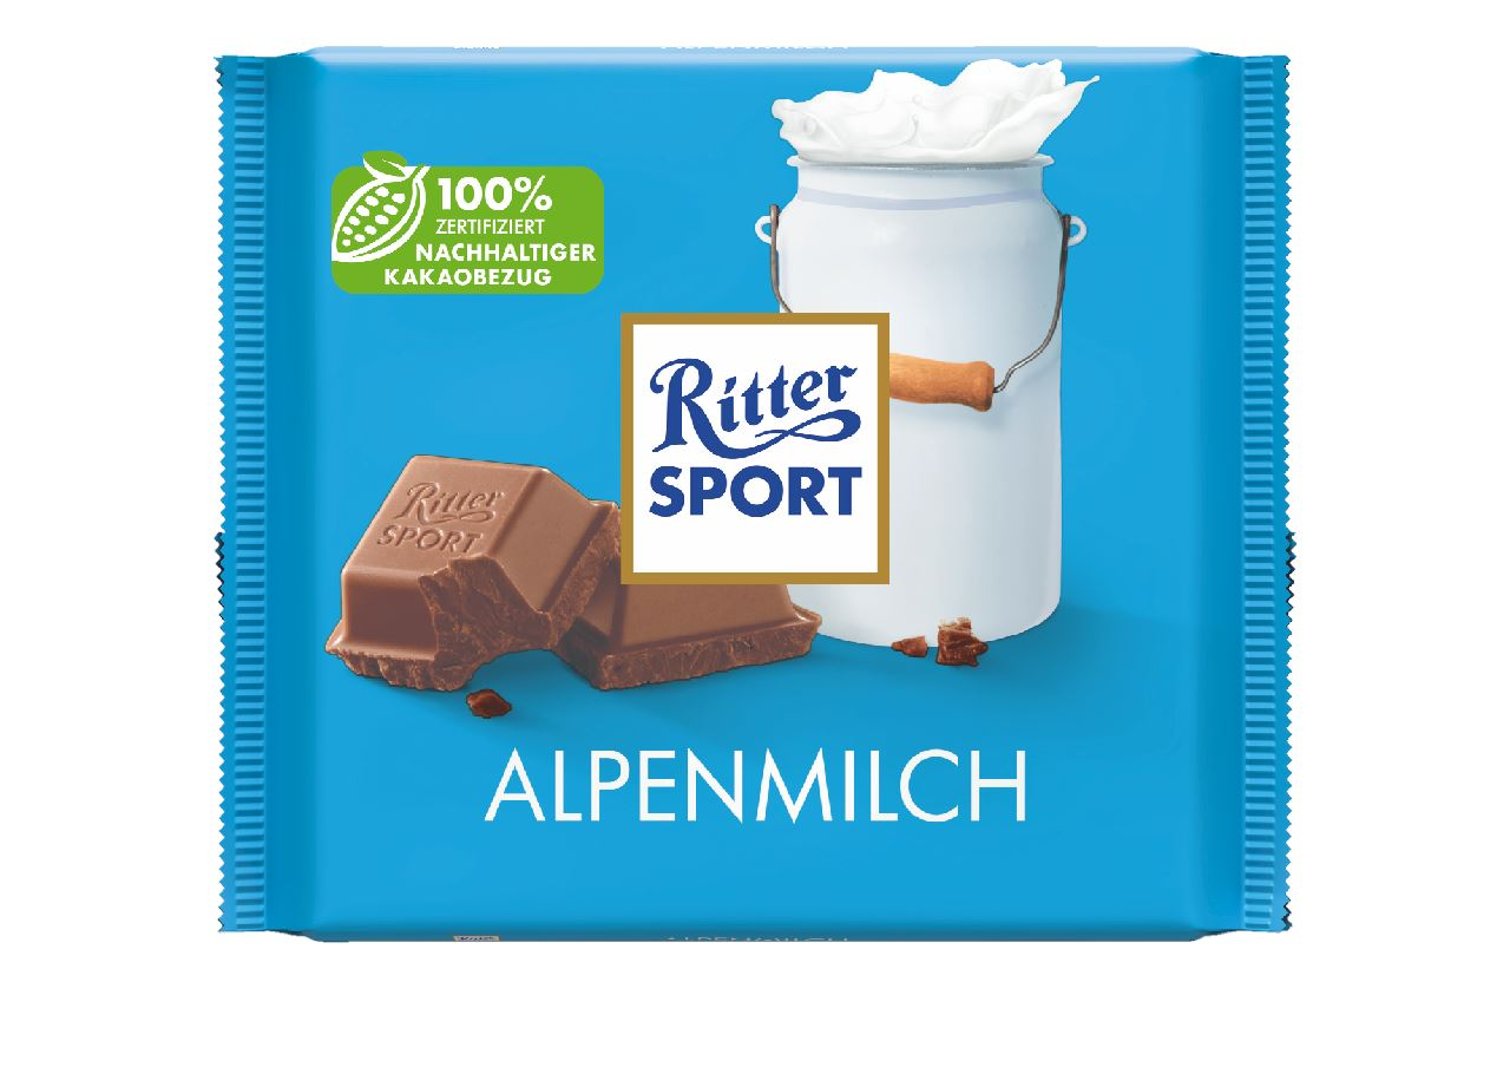 Ritter Sport - Tafelschokolade Alpenmilch 250 g Packung